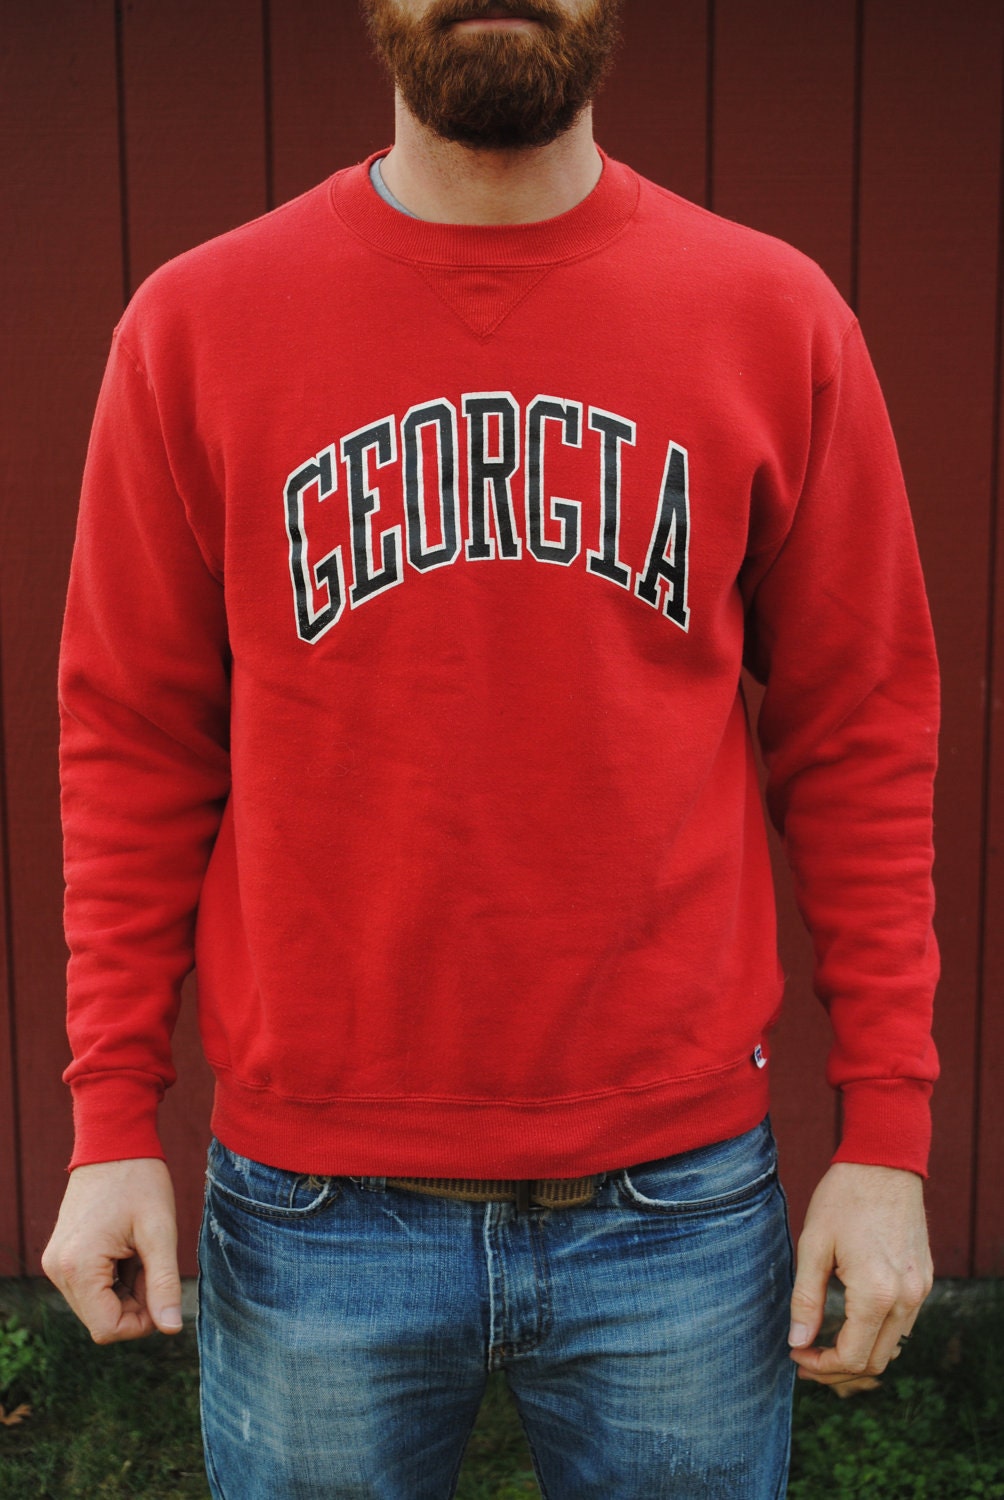 Vintage University of Georgia Sweatshirt by PollyandEsthersTees